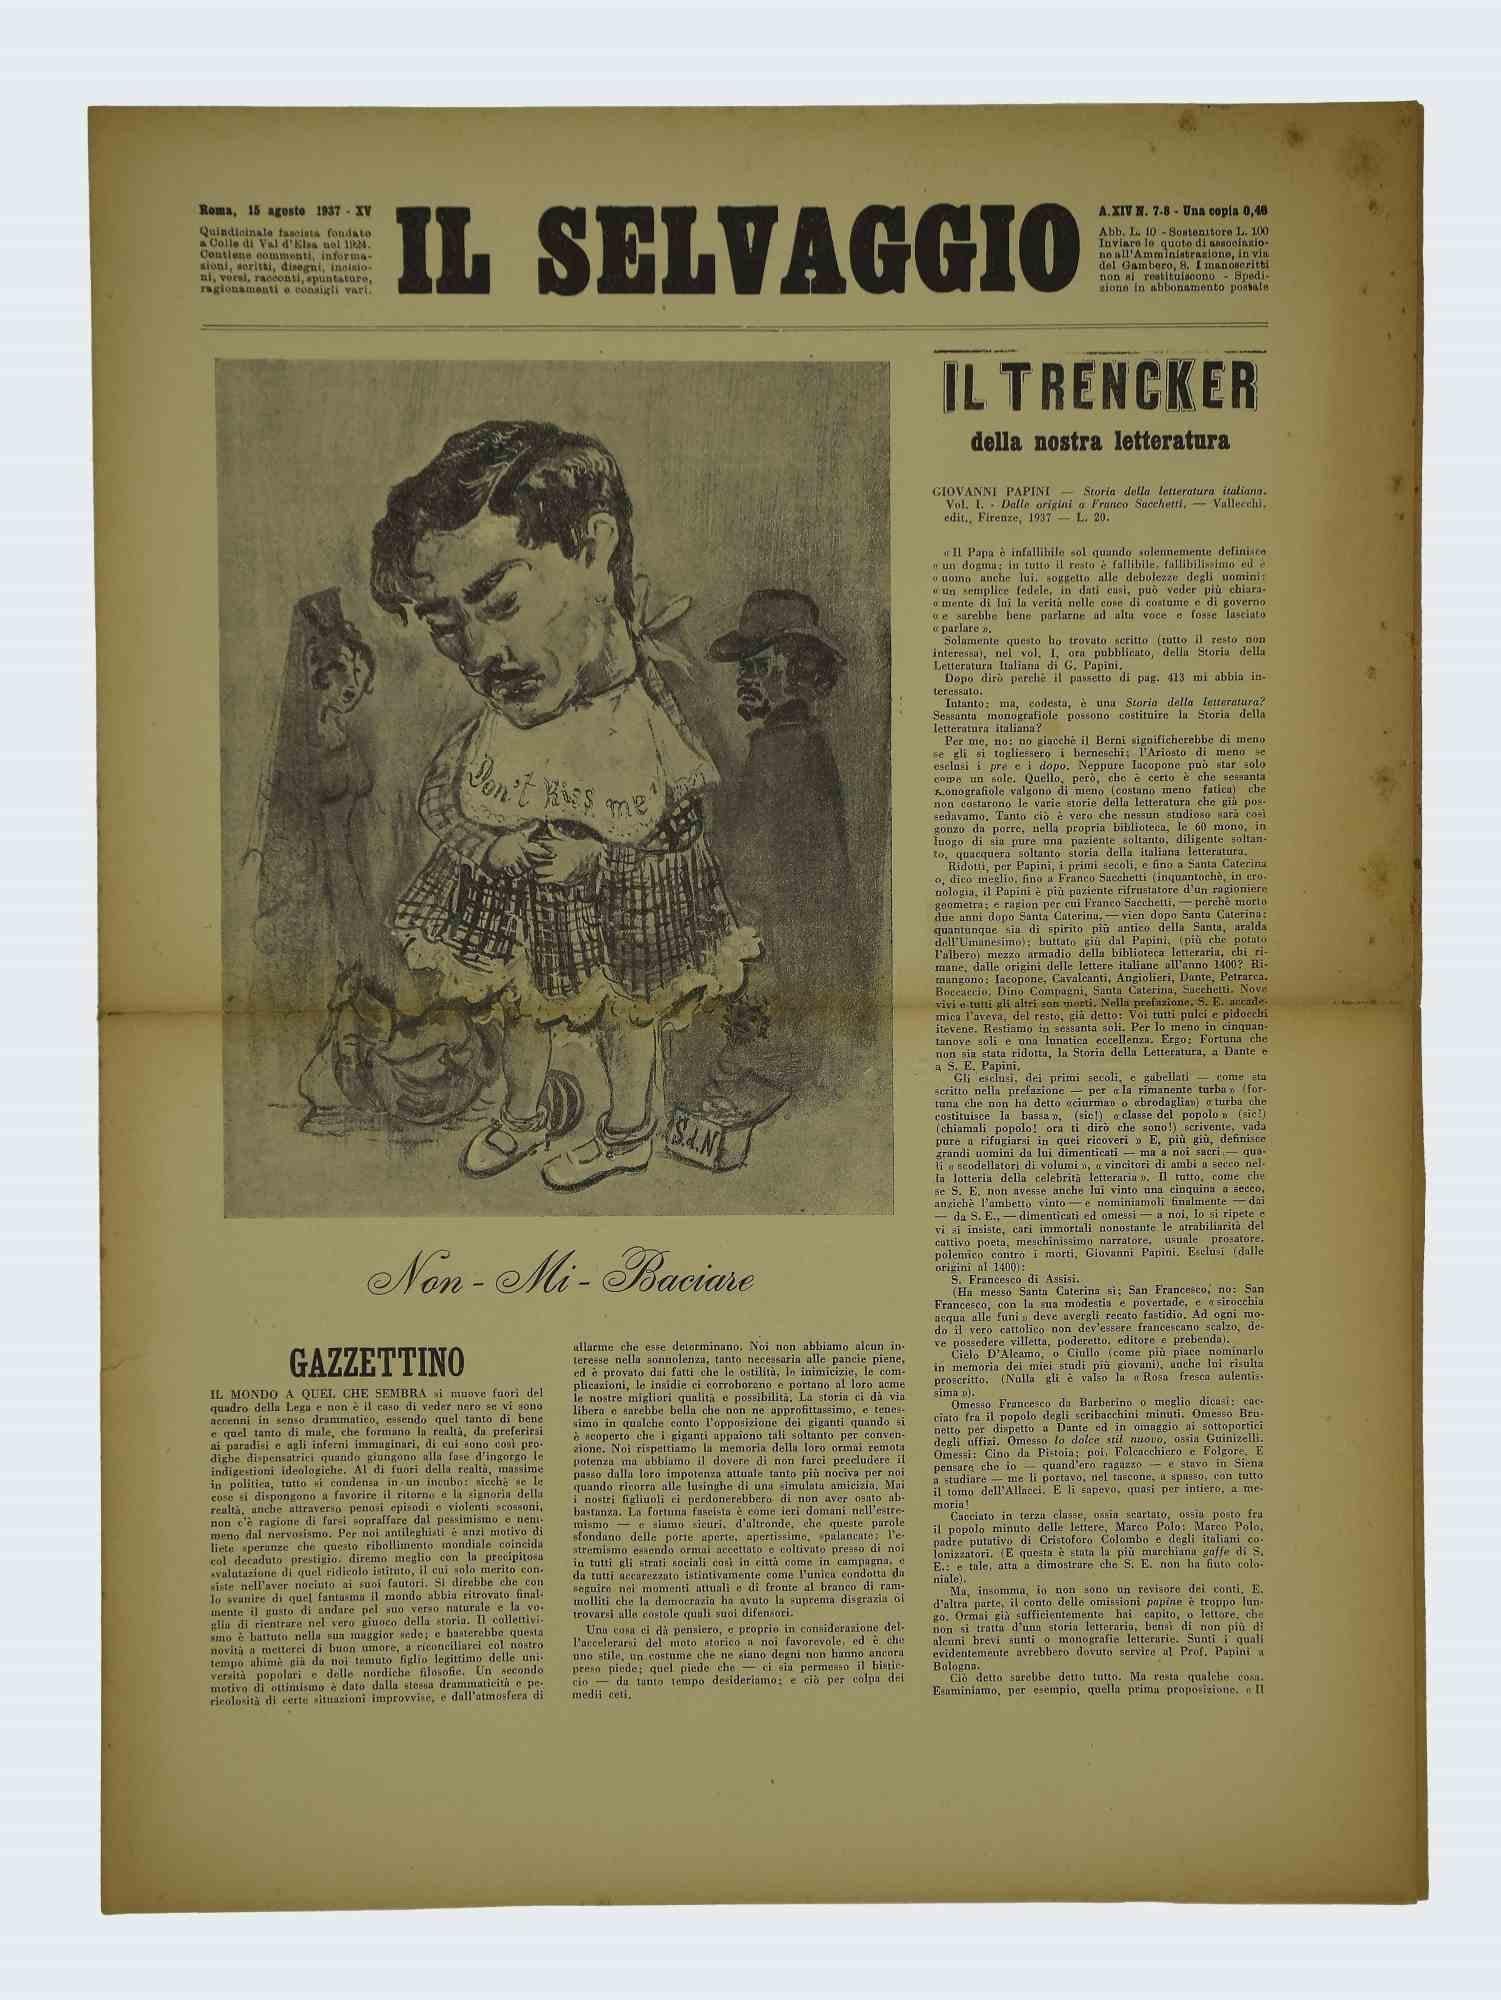 En feuilletant quelques pages de " Il Selvaggio, No.7-8 1937 " 15 Agosto 1937-Anno-XIV ", " Annual supporter subscription - Una copia 40 Cent - Fortnightly Newspaper letters arts and sciences ".

Gravure de l'artiste Mino Maccari

Bonnes